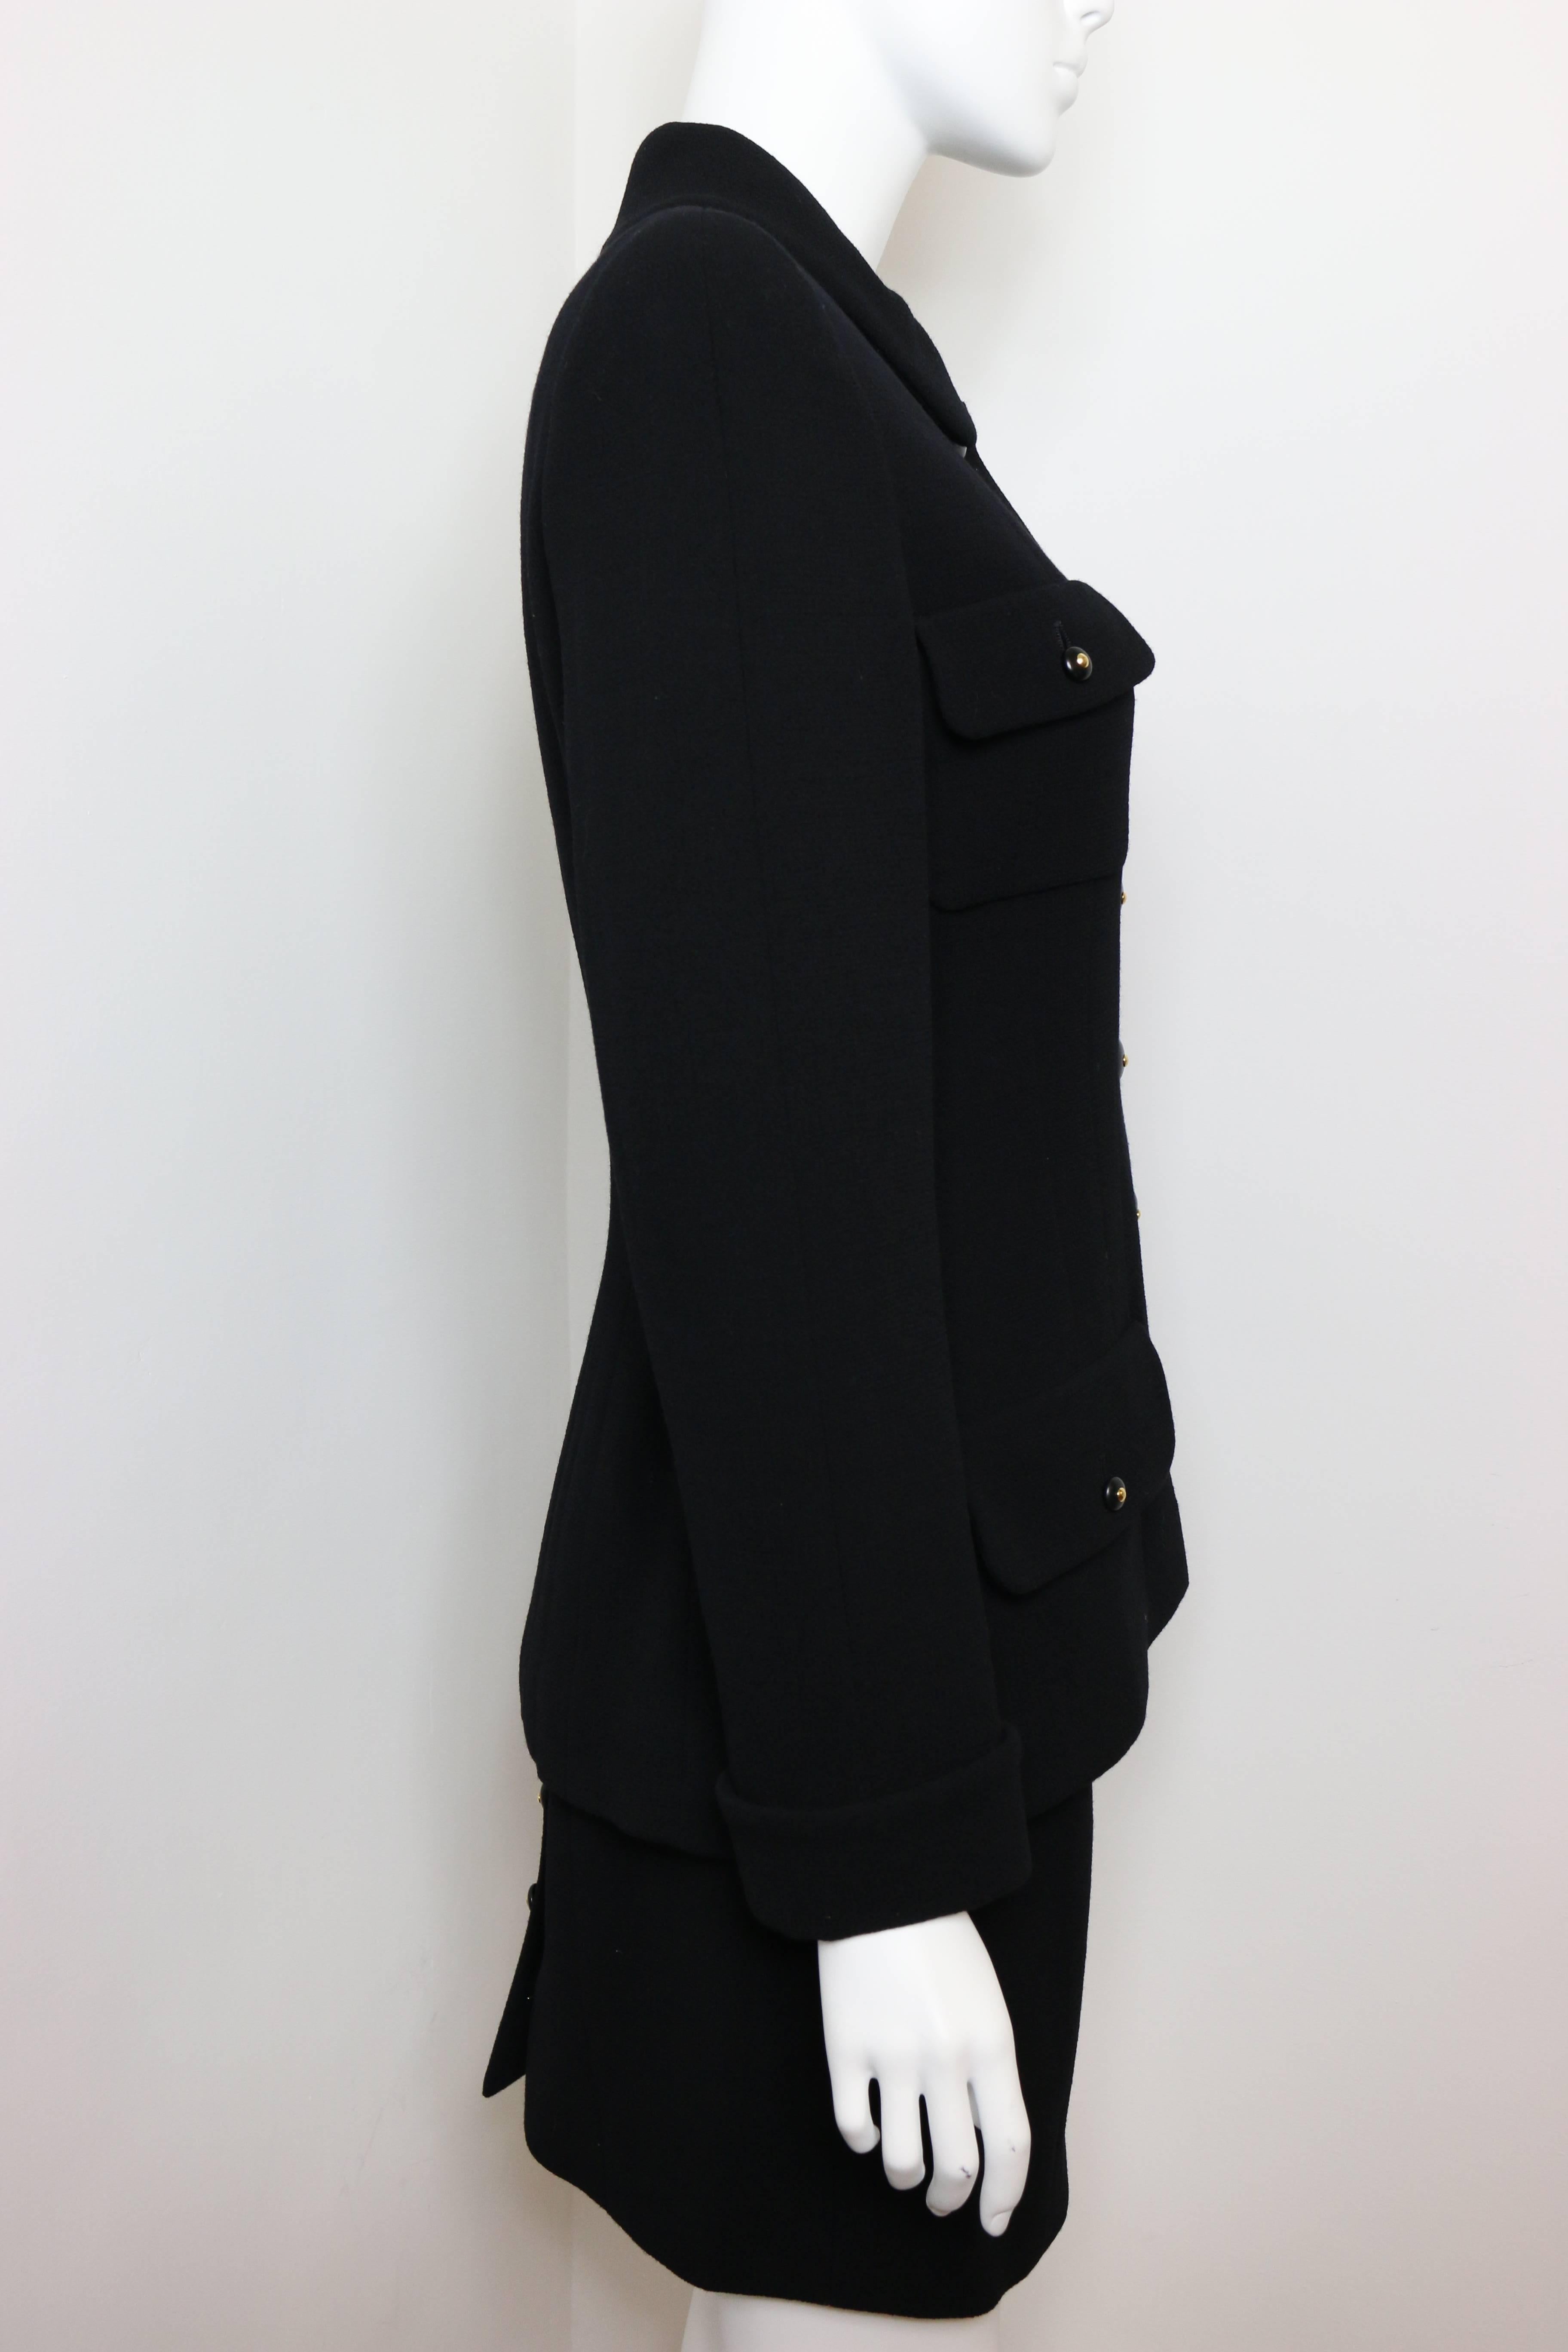 Women's Chanel Black Wool Suit